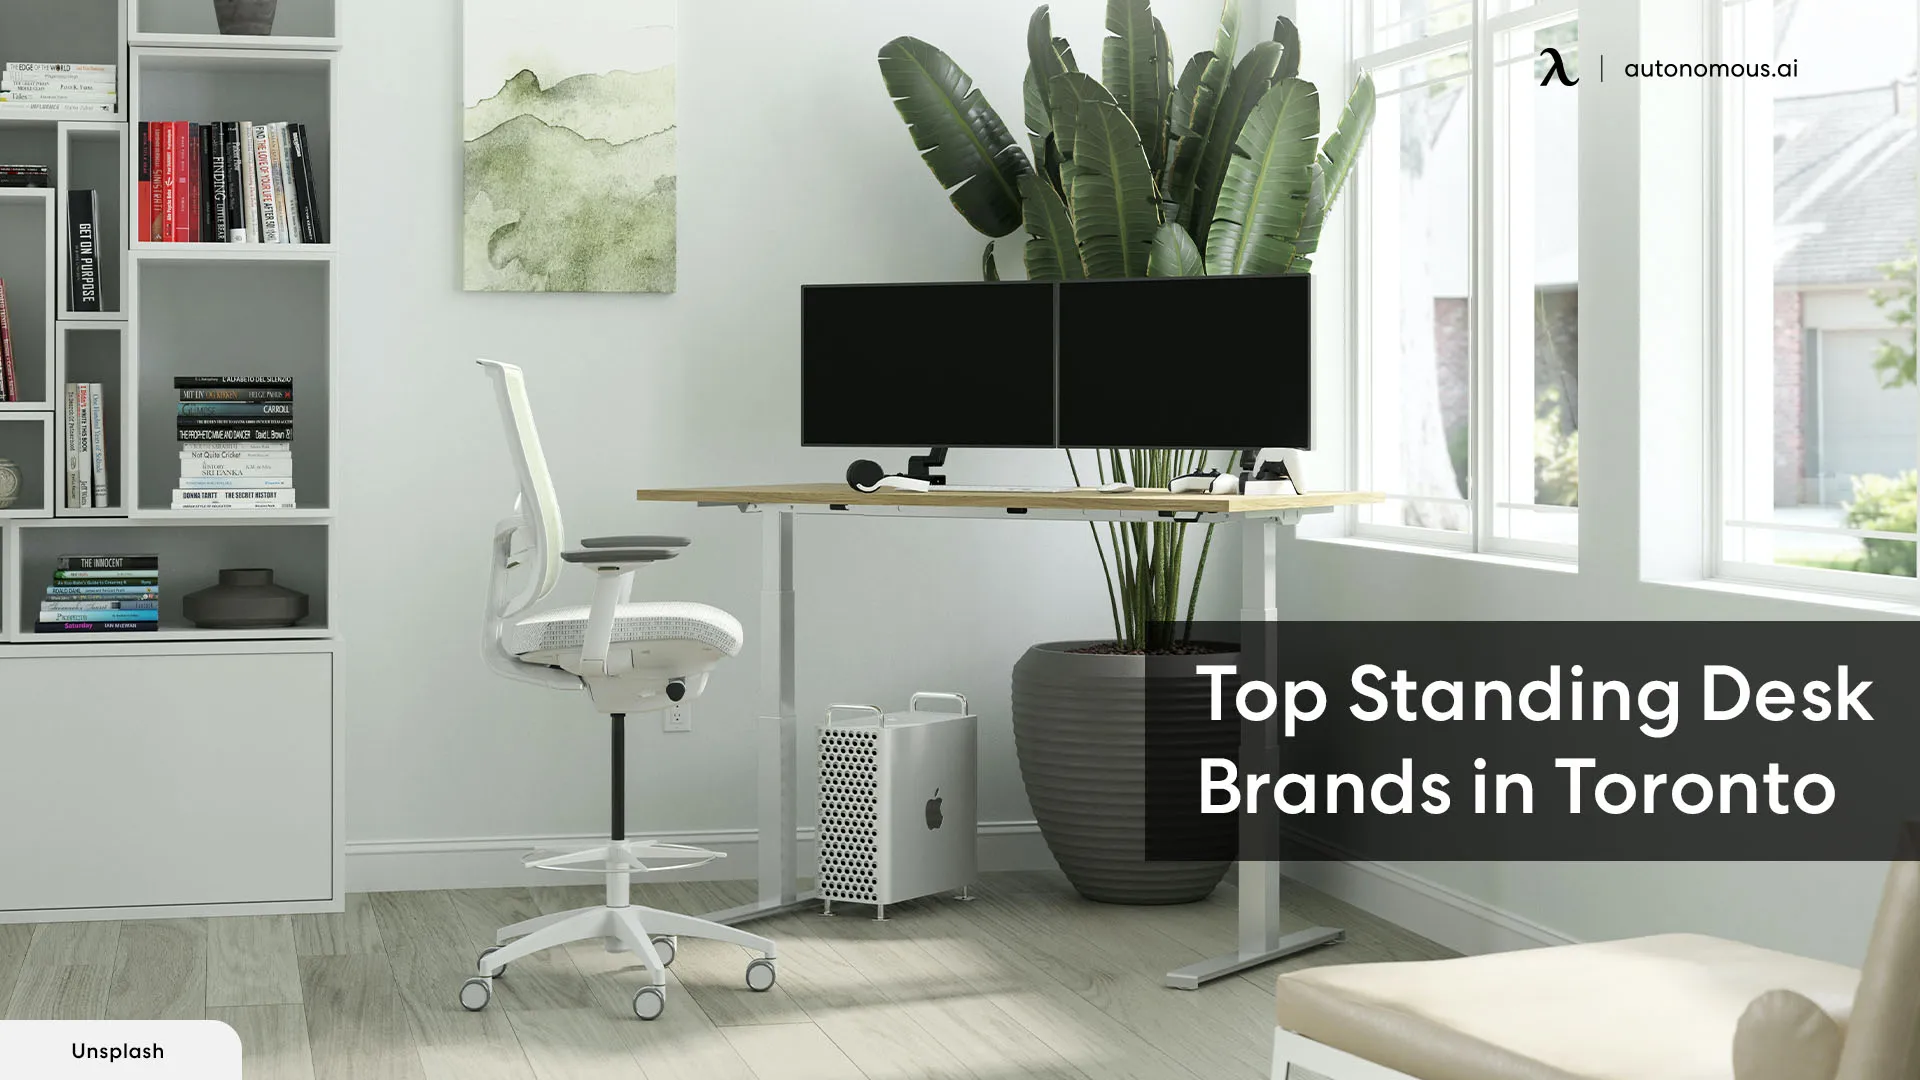 Standing Desk in Toronto: Top 3 Adjustable Desk Brands